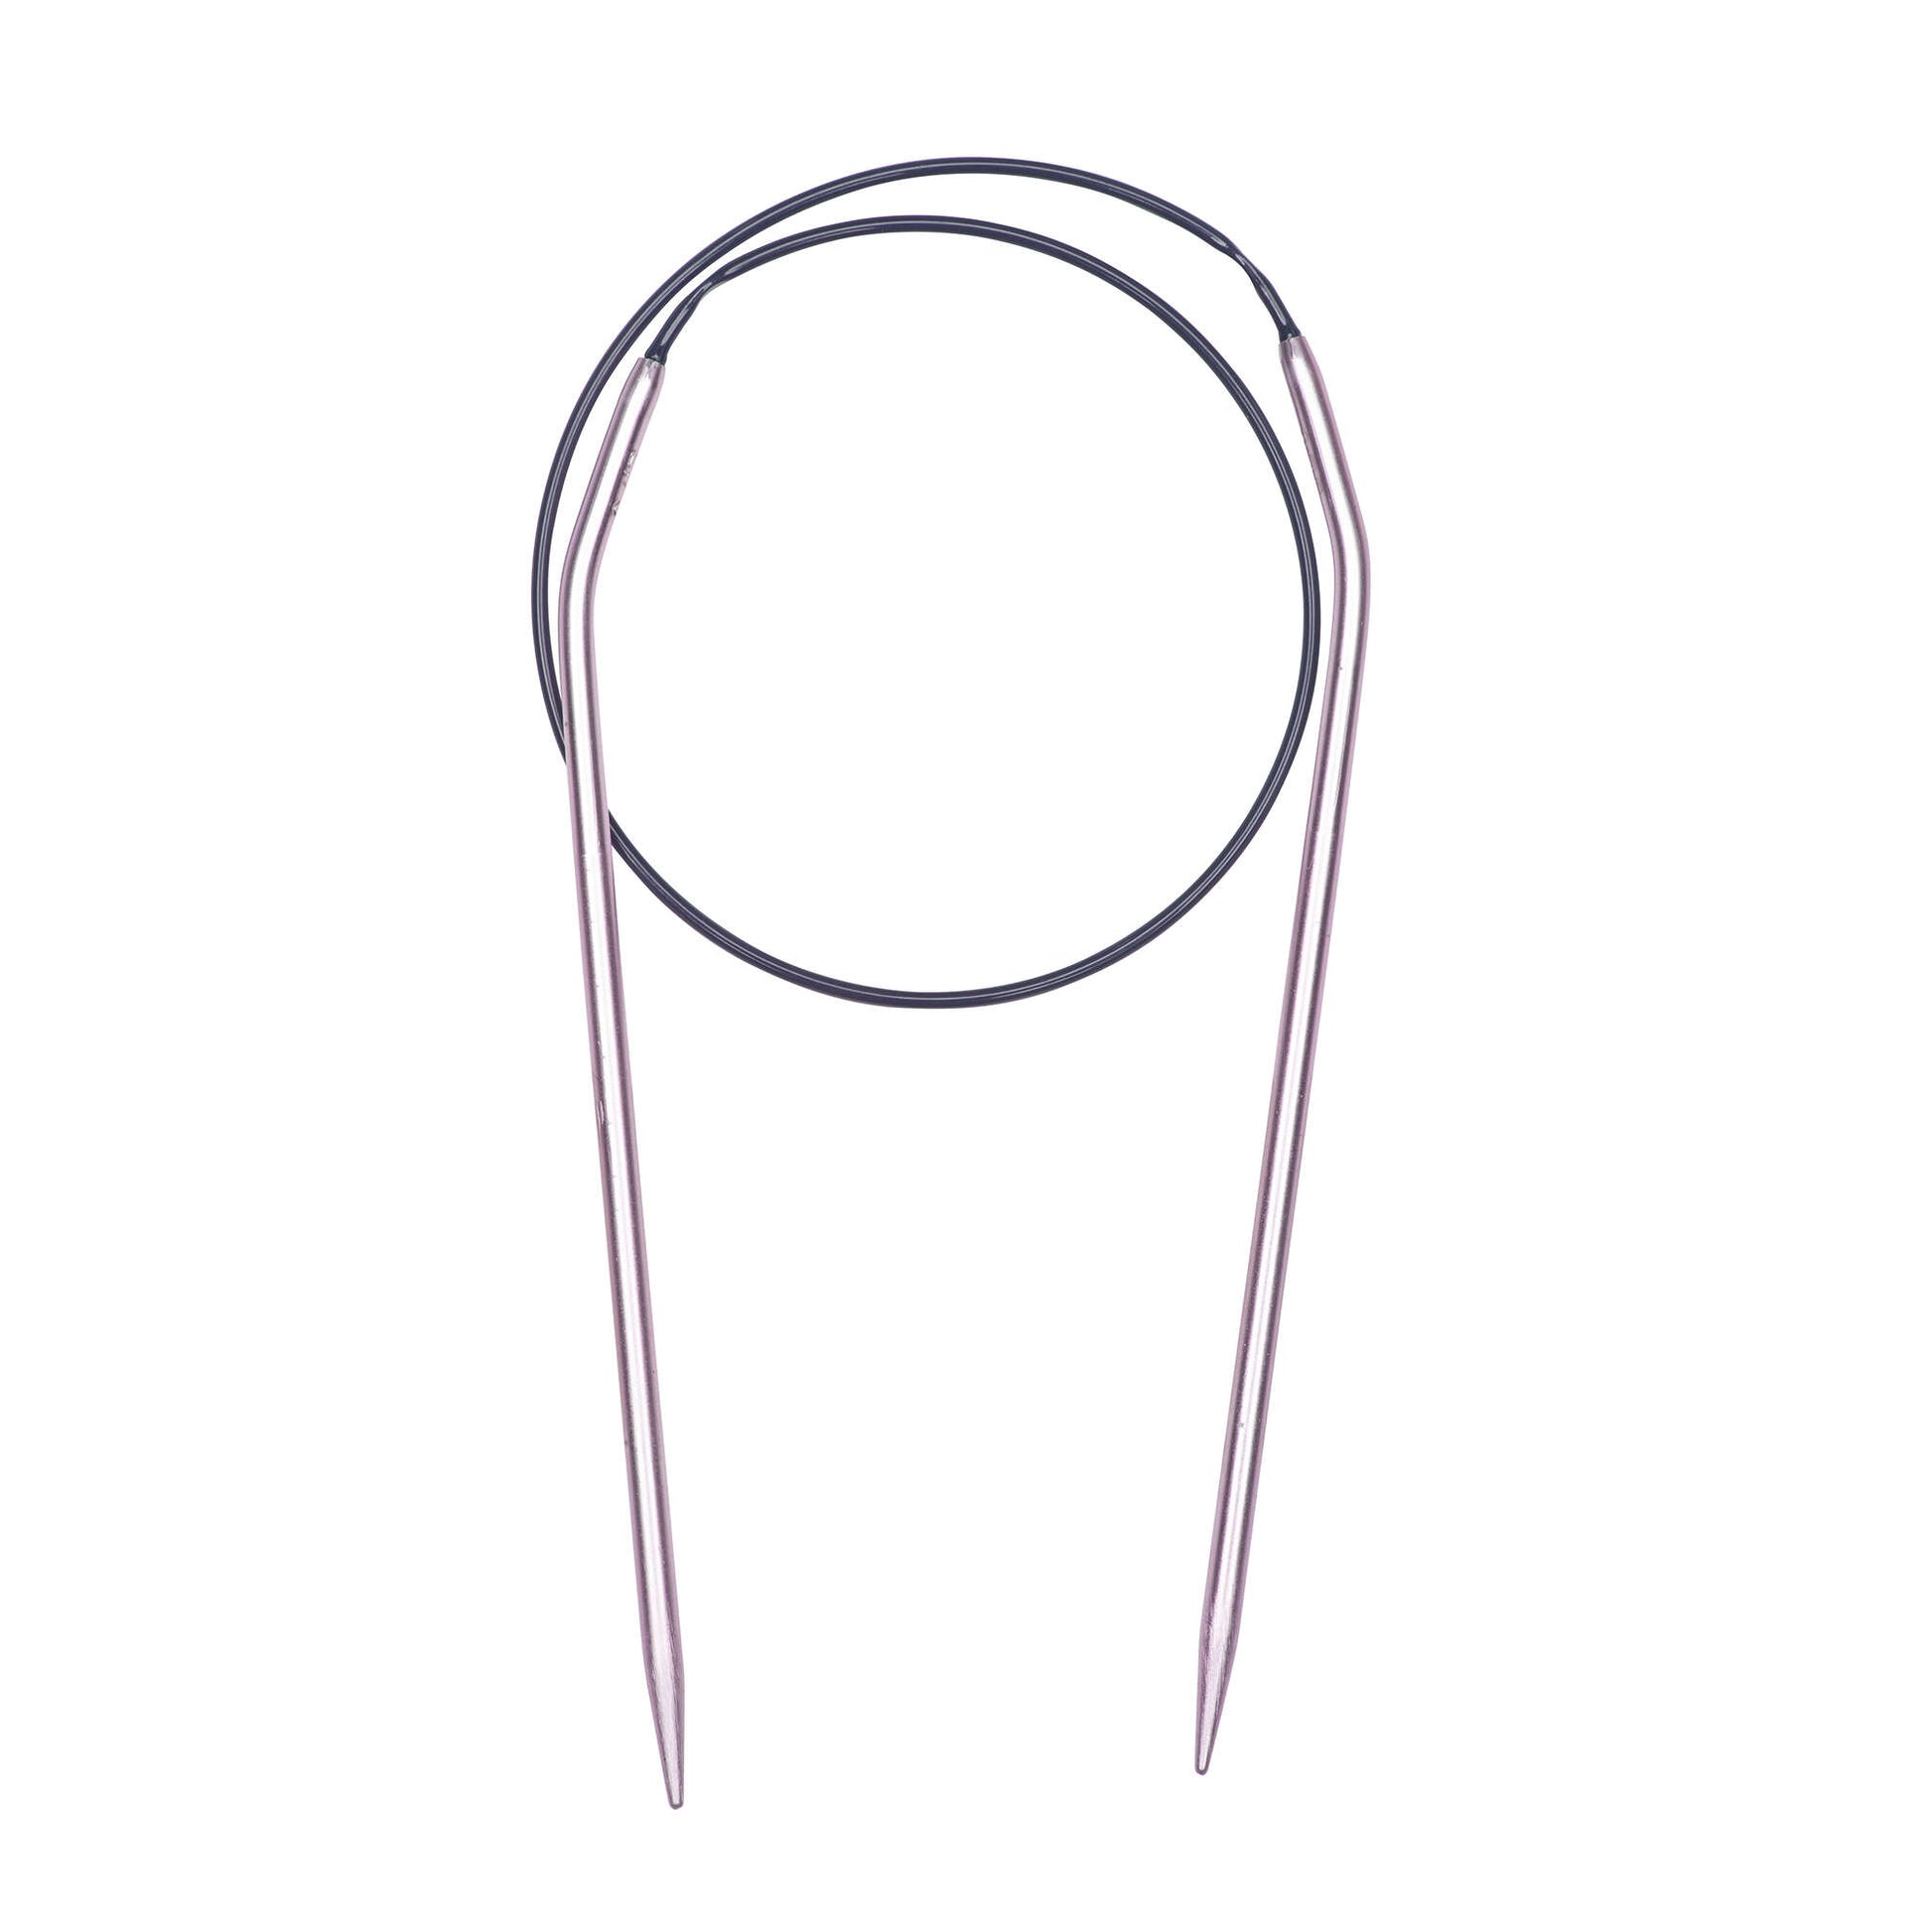 Susan Bates Silvalume Circular Knitting Needles Size 6 (4mm), 16 inch